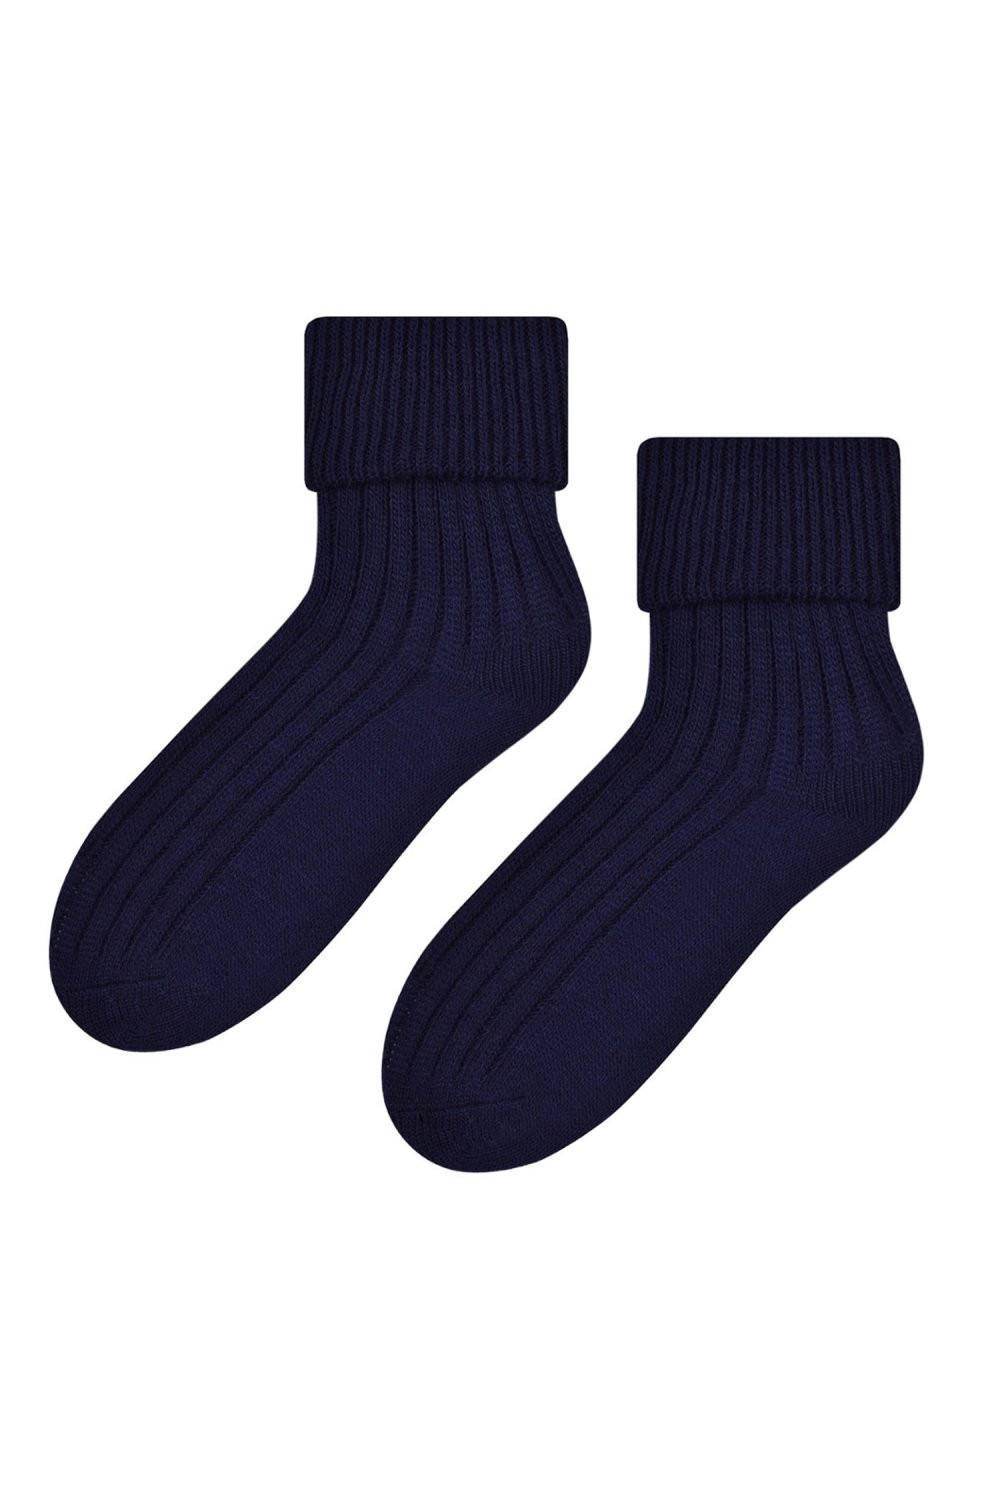 Dámské ponožky 067 dark blue - Steven tmavě modrá 35/37